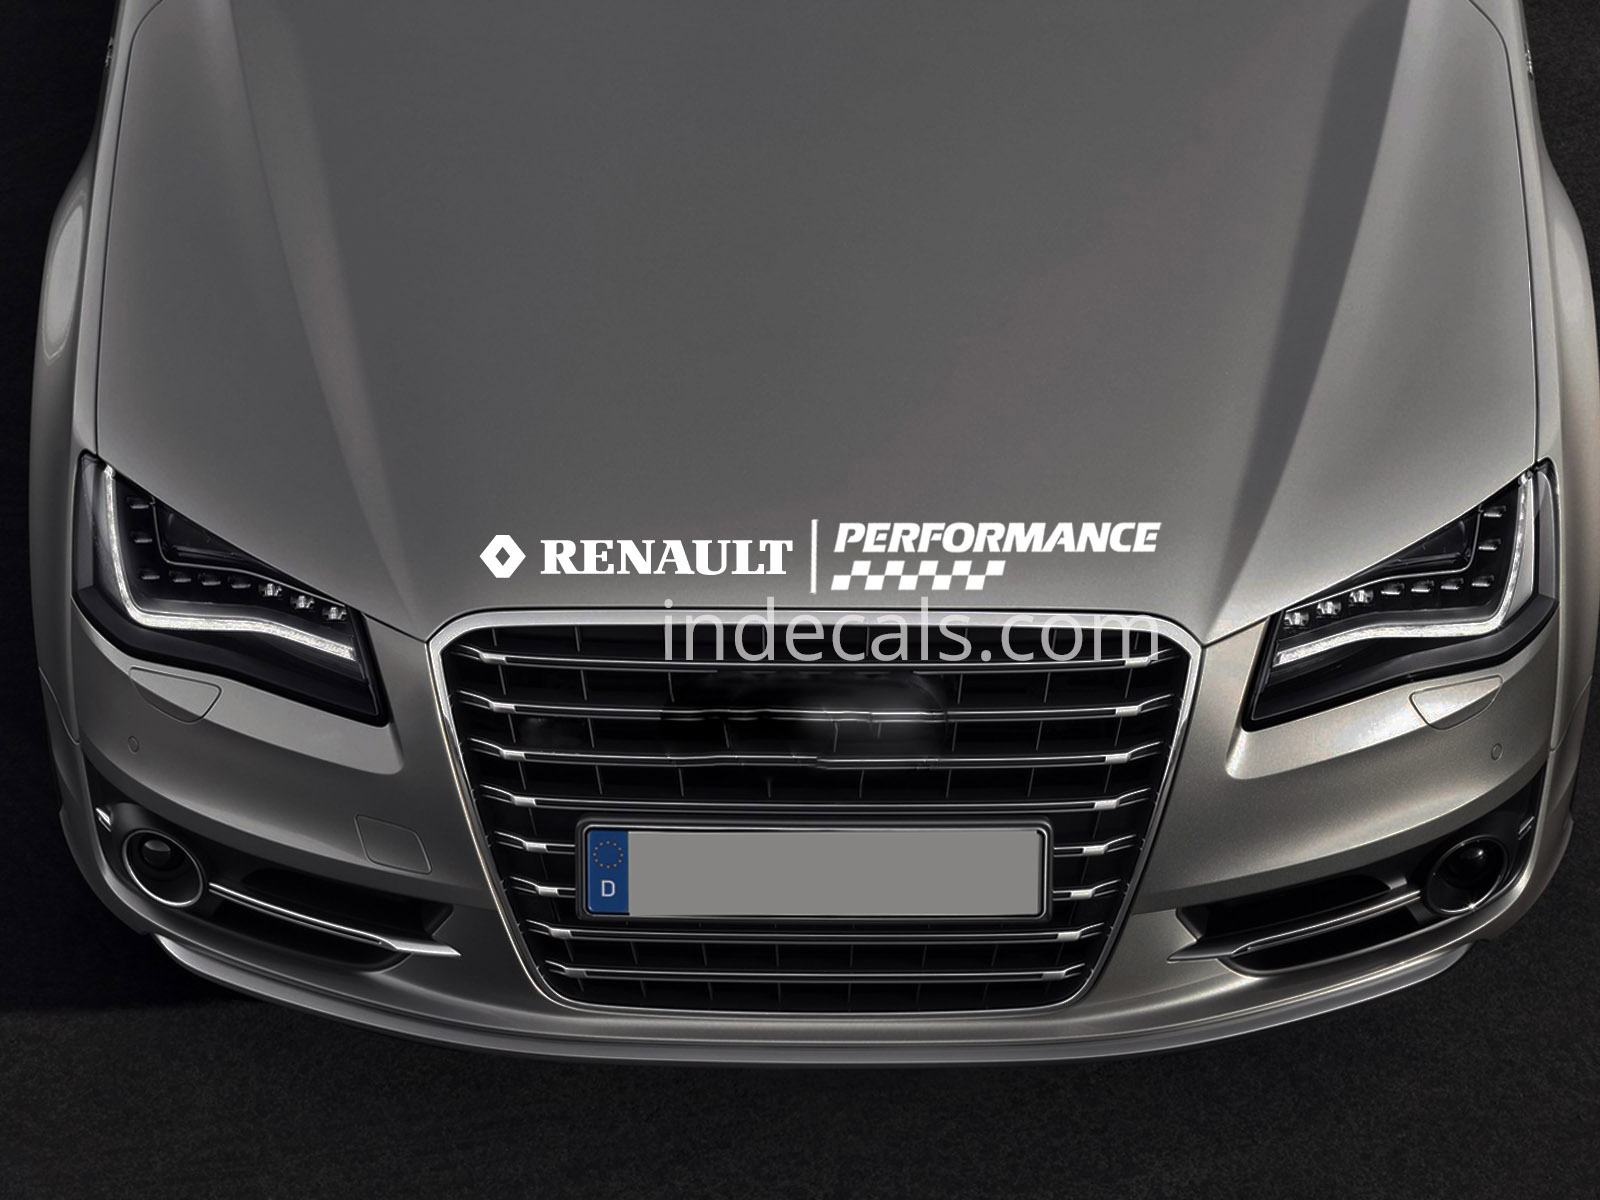 1 x Renault Peformance Sticker for Bonnet - White